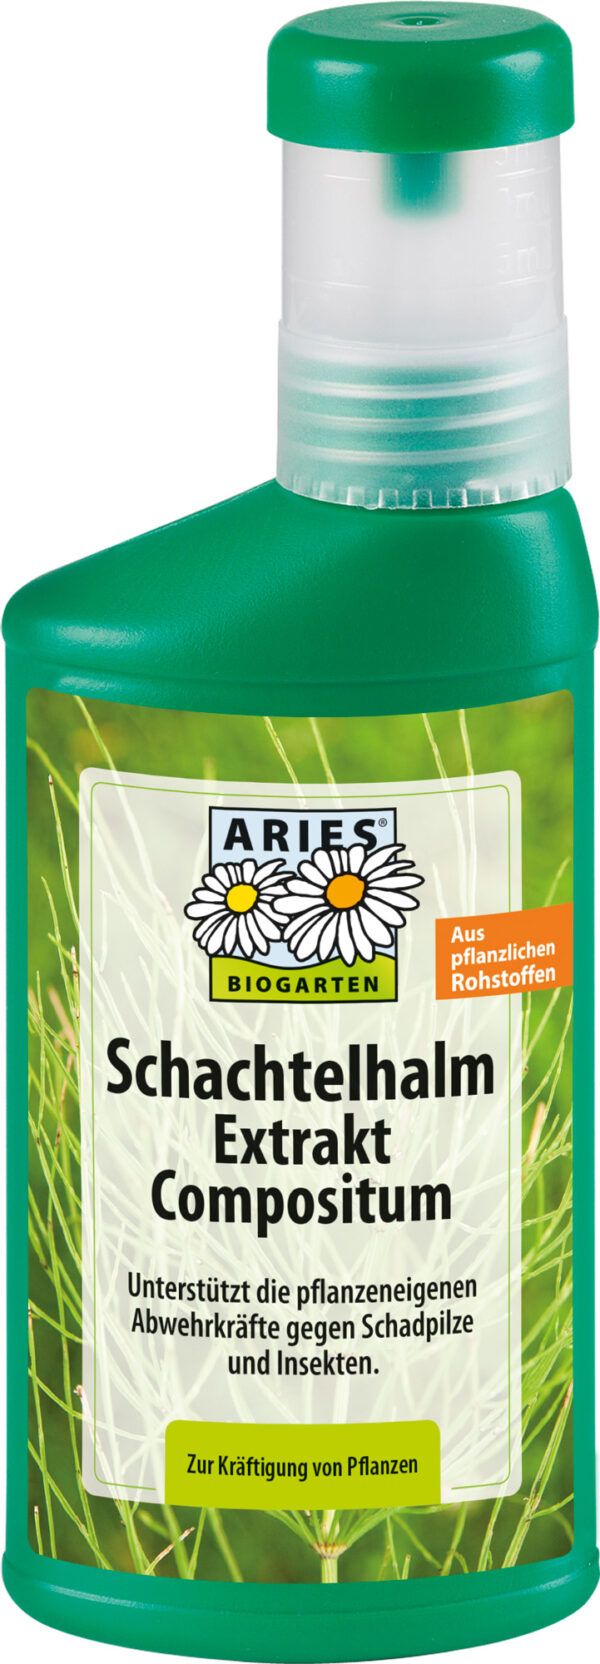 Aries Schachtelhalm Extrakt Compositum 250ml ***